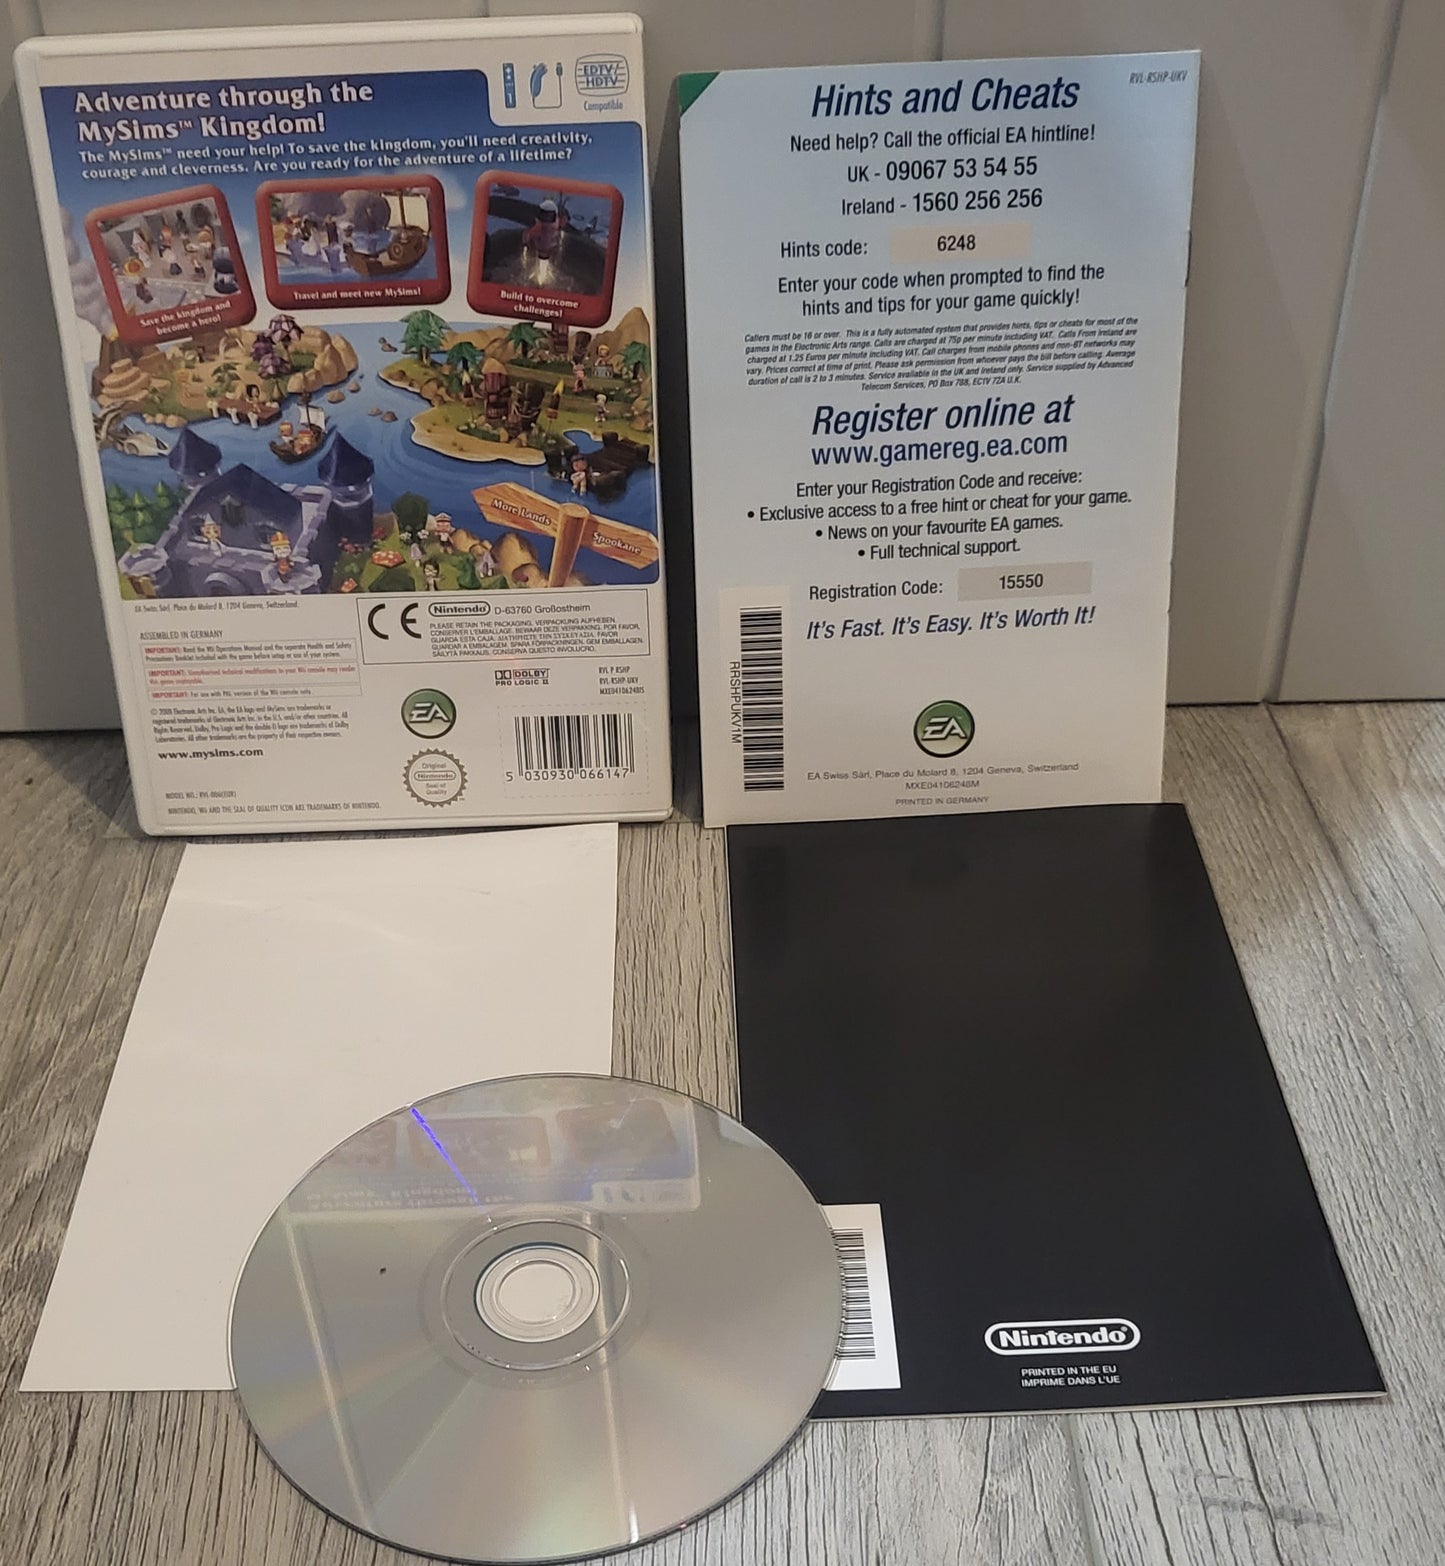 My Sims Kingdom Nintendo Wii